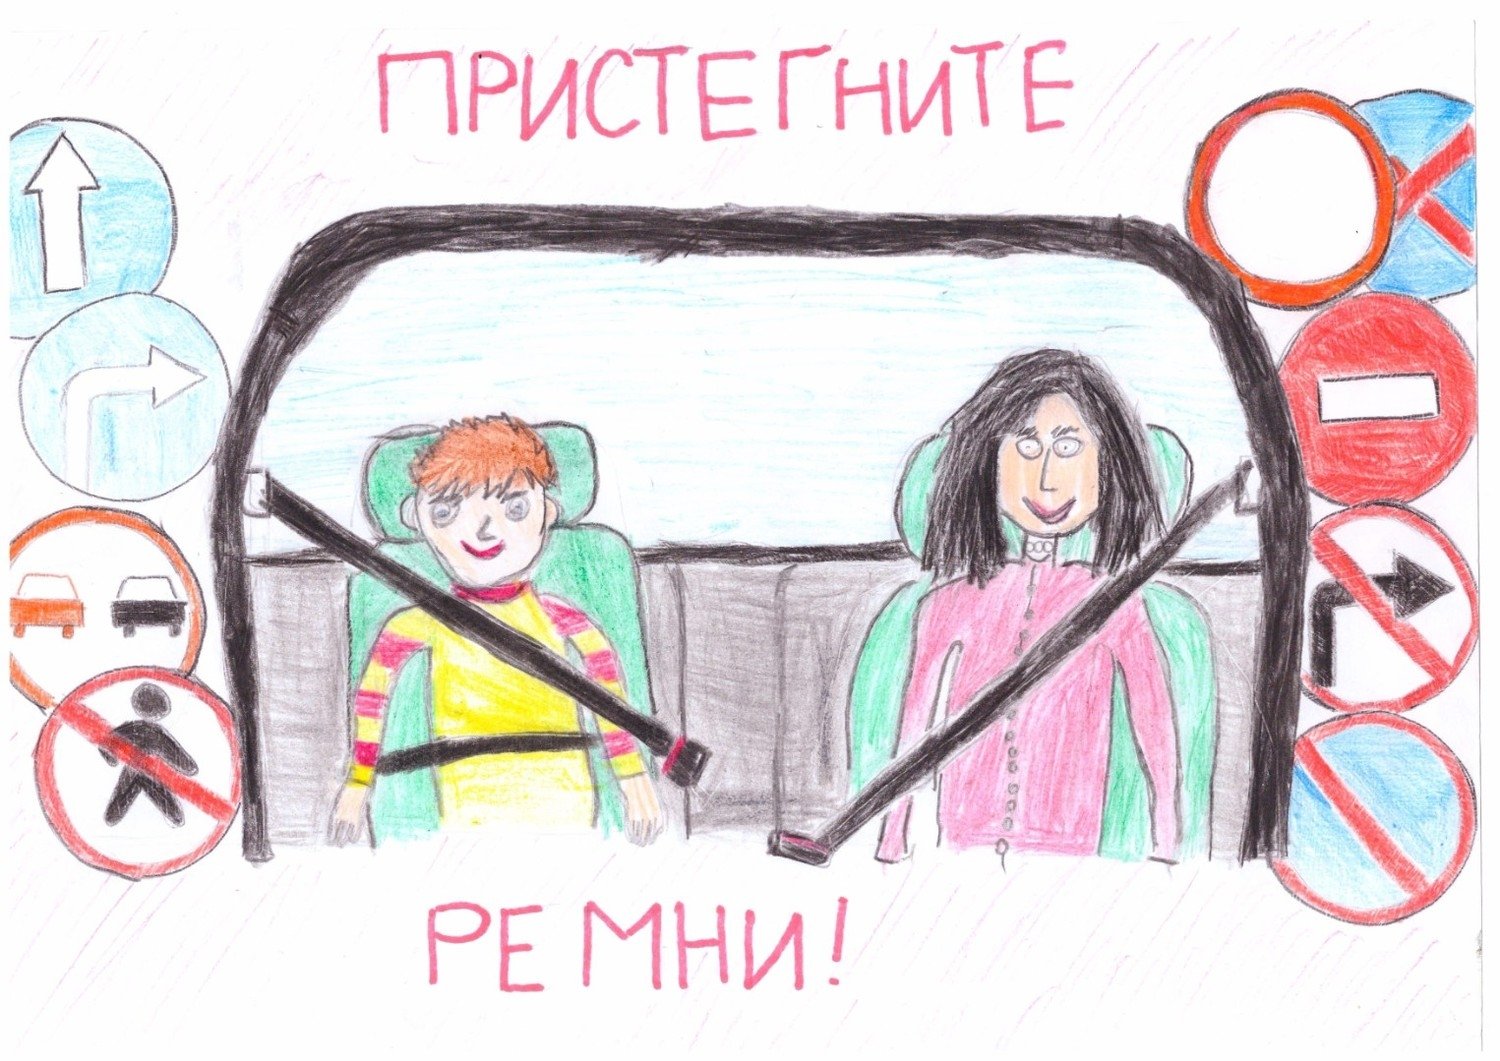 Рисунок на тему ребенок главный пассажир